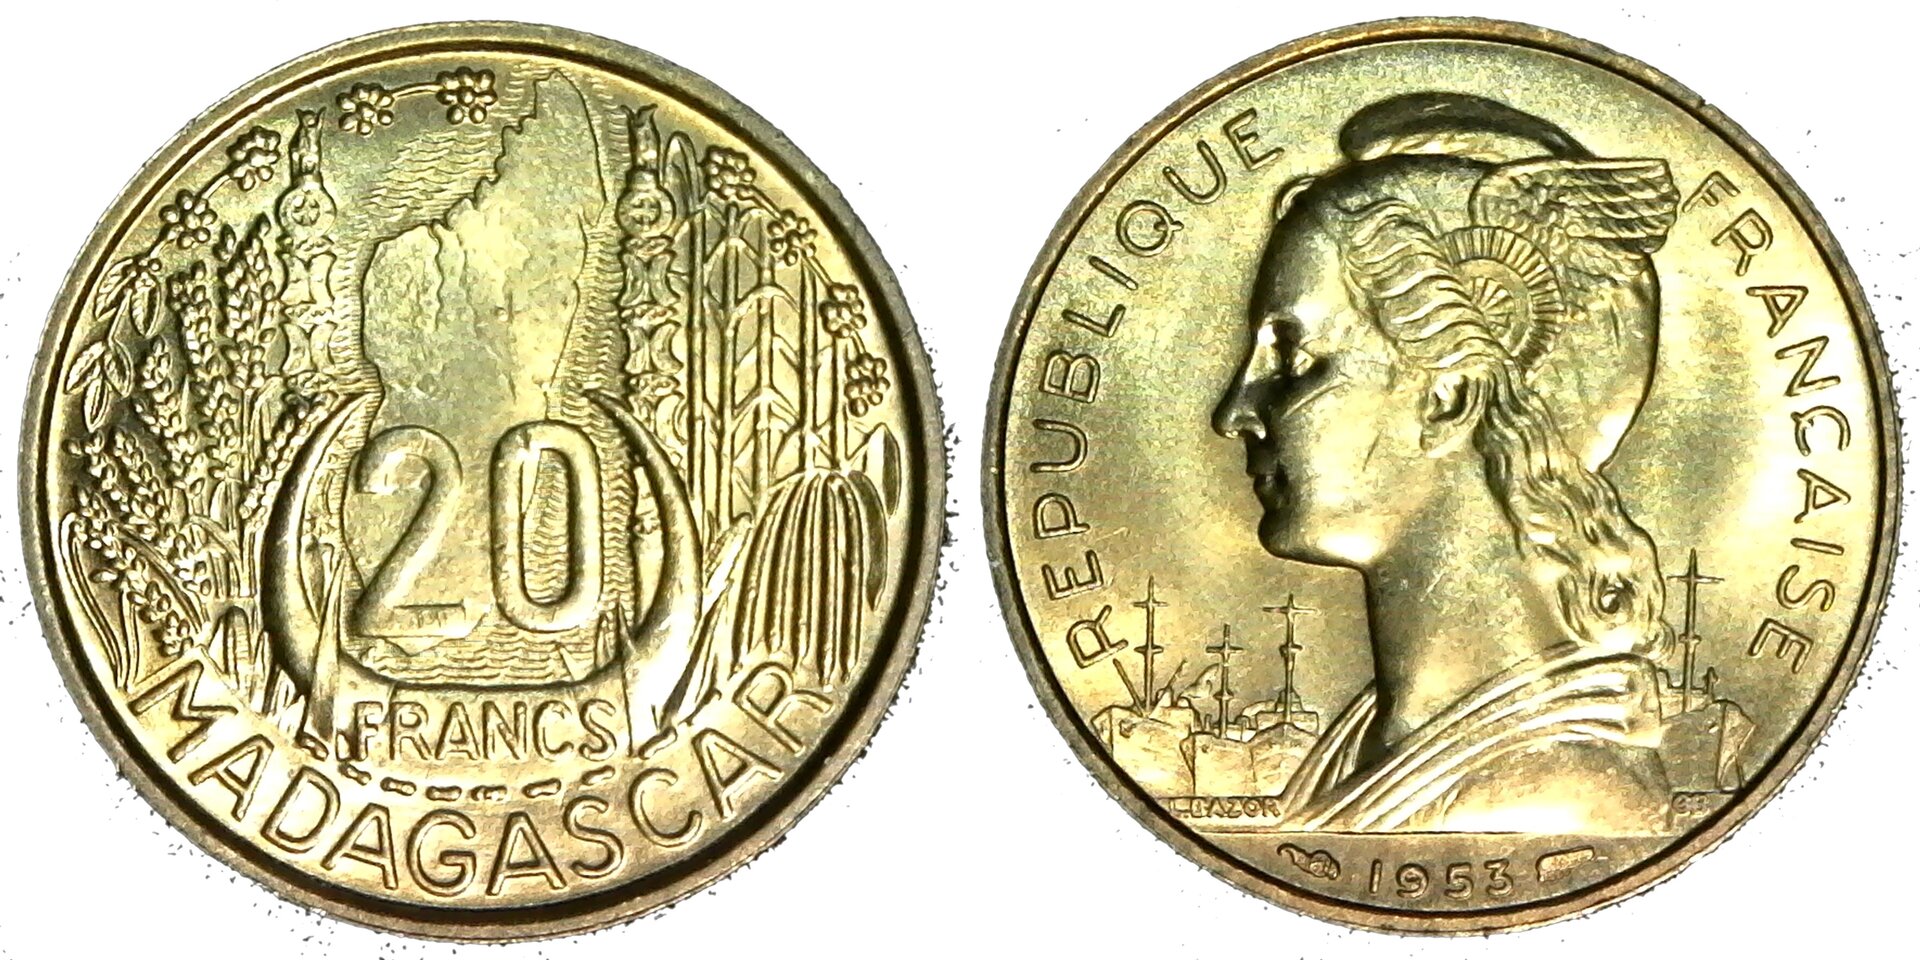 Madagascar 20 francs 1953 obv-side-cutout.jpg